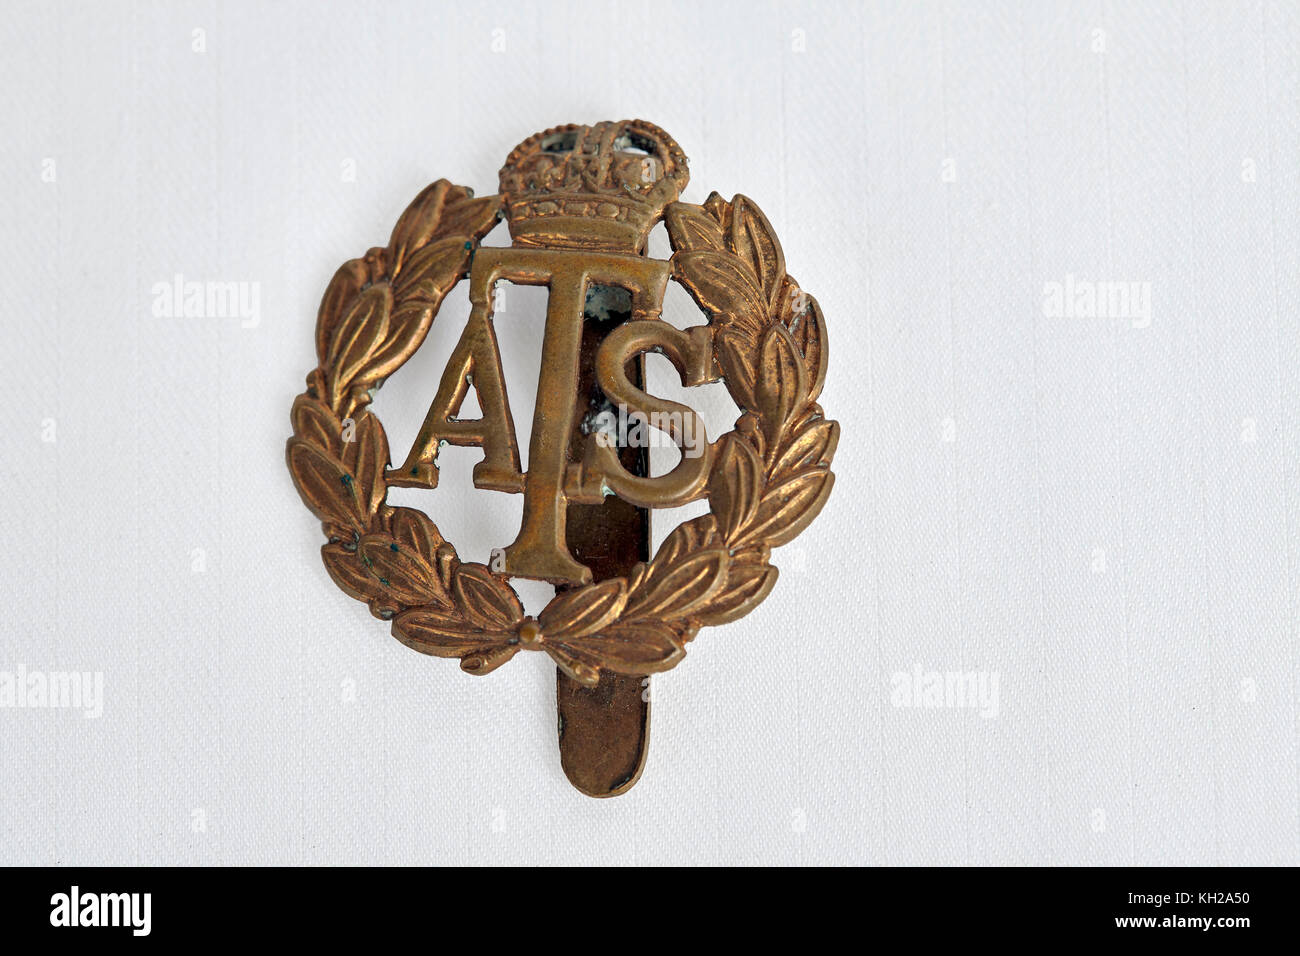 World War ATS cap badge Stock Photo